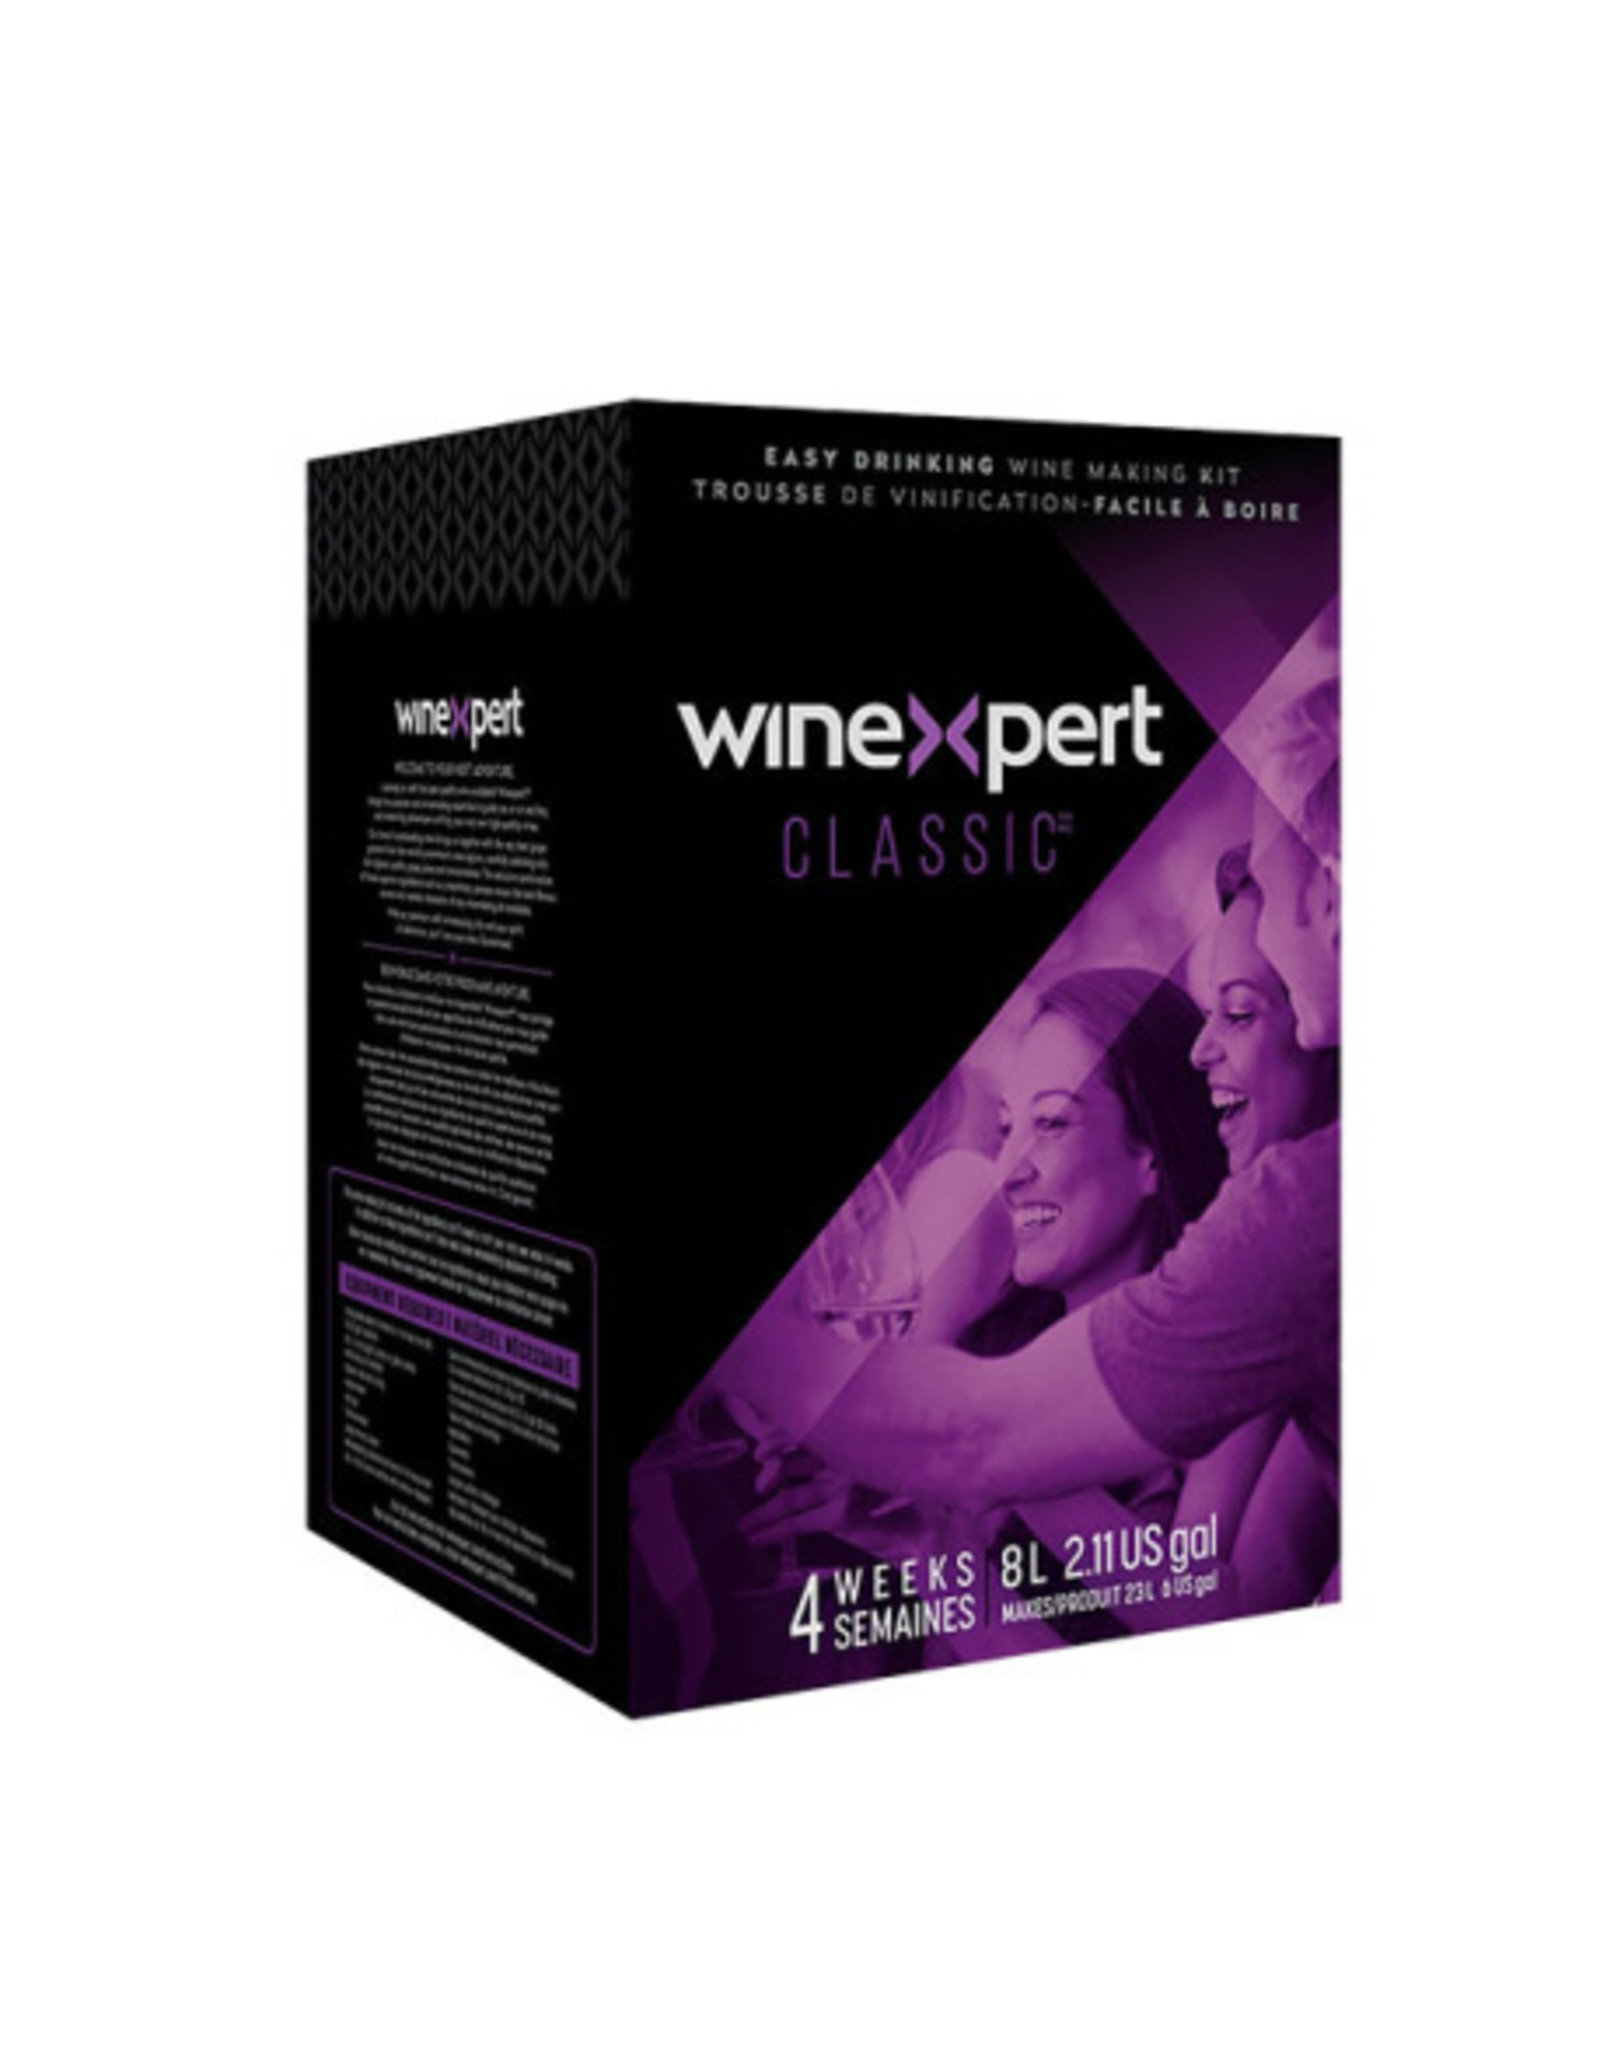 Classic Winexpert Classic Sauvignon Blanc Chile 8L